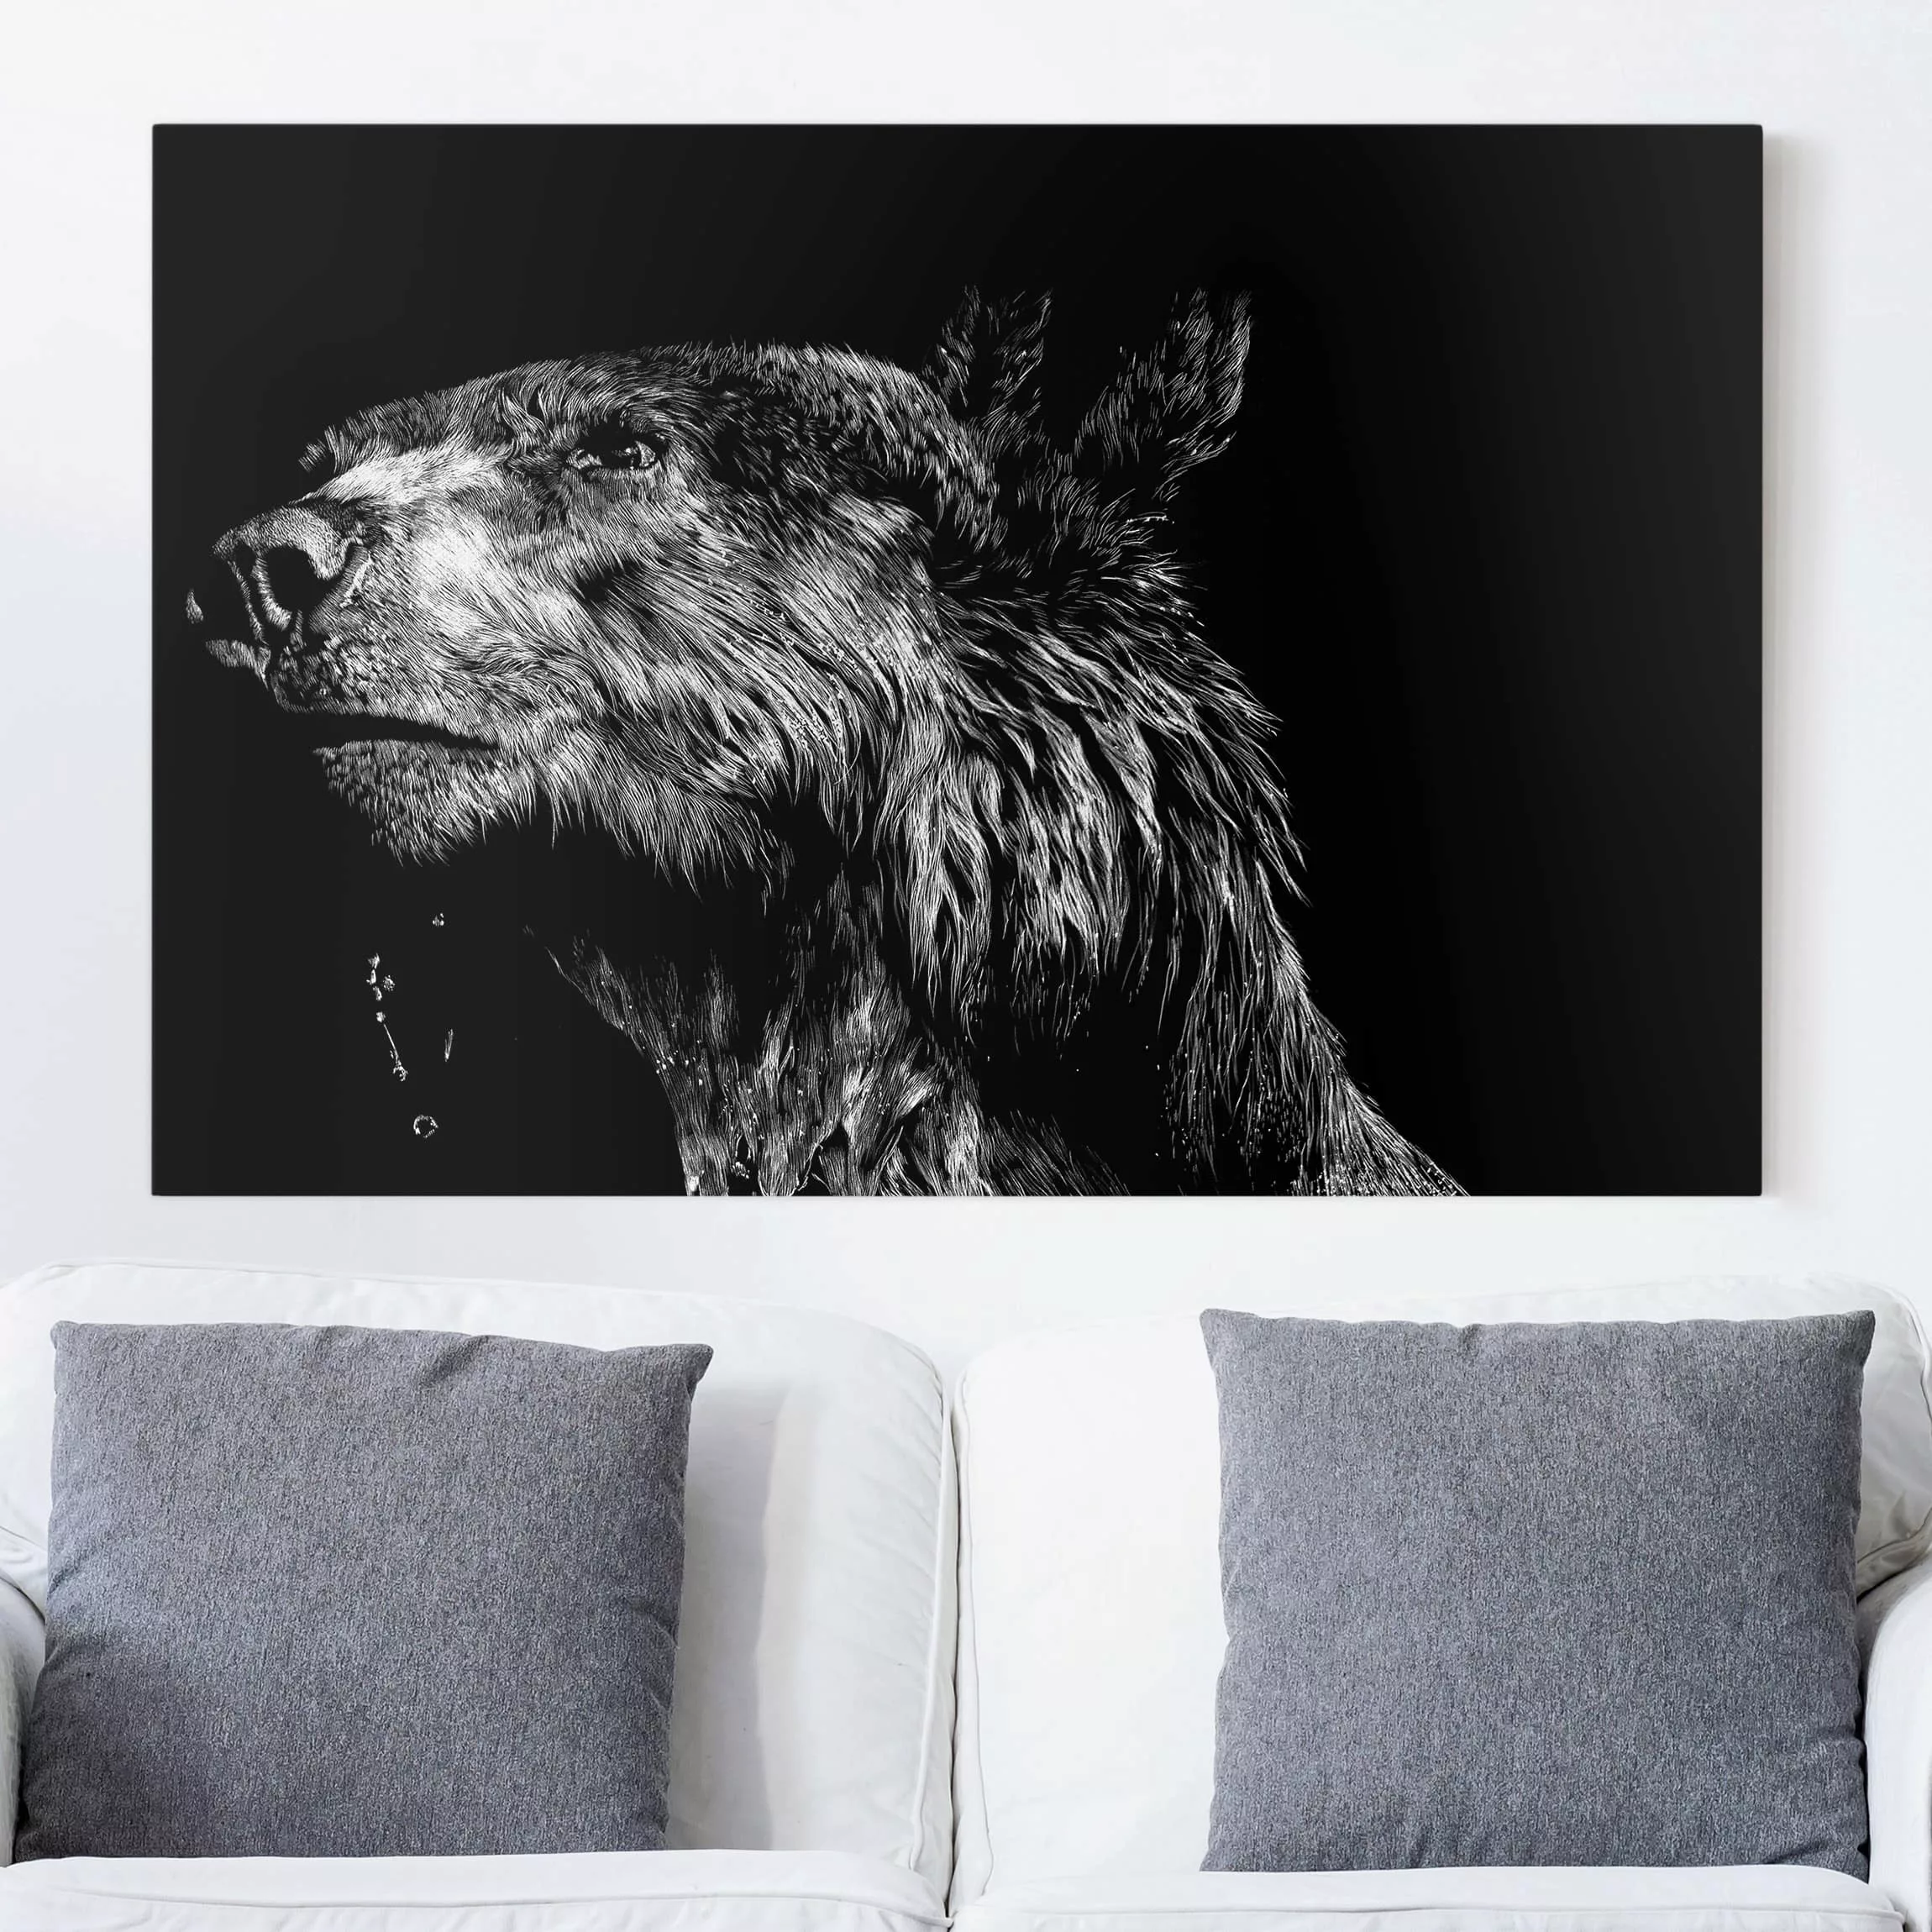 Leinwandbild Schwarz-Weiß - Querformat Bär vor Schwarz günstig online kaufen